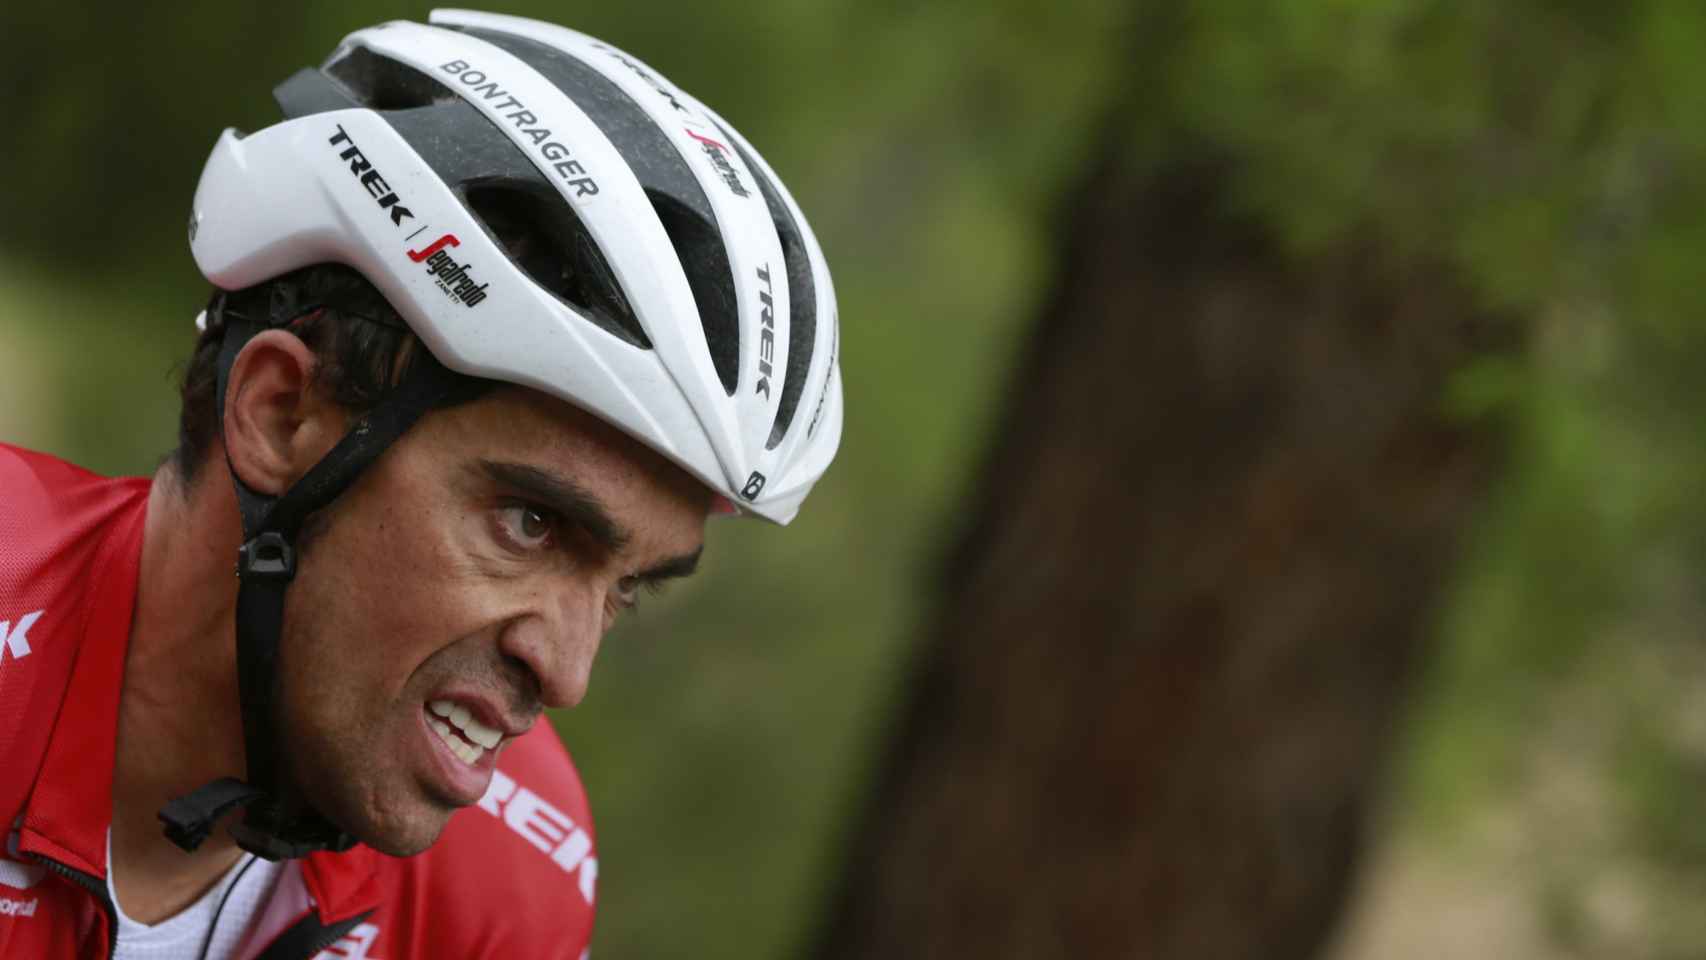 Contador agita la Vuelta a España: recorta 40 segundos a Froome y 20 a Nibali y Aru